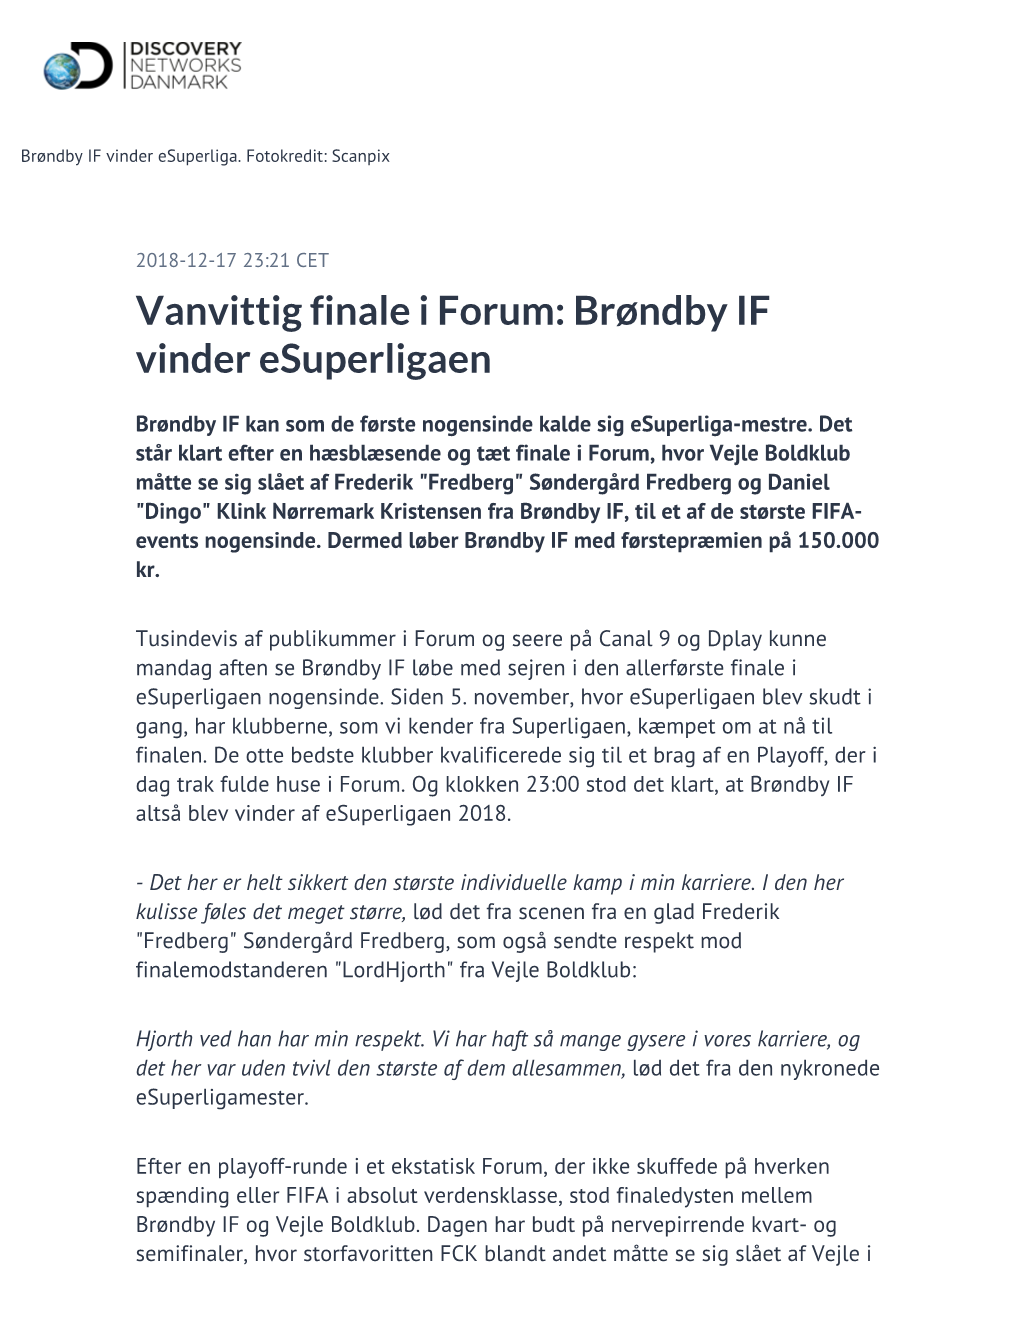 Vanvittig Finale I Forum: Brøndby IF Vinder Esuperligaen